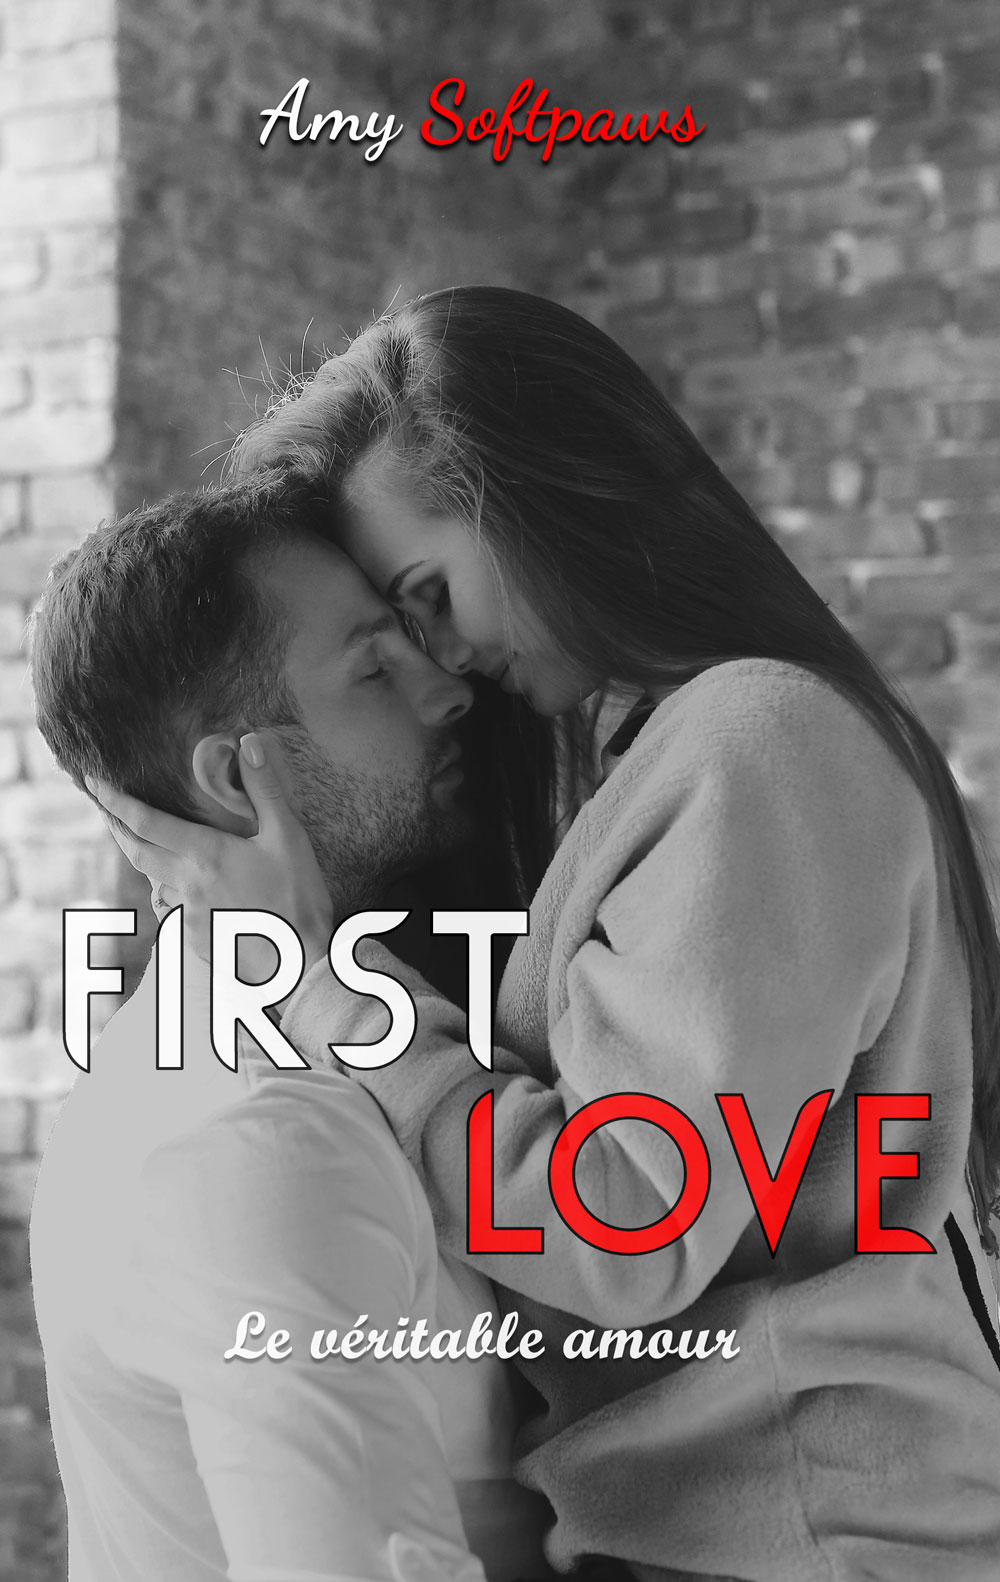 couverture du livre "first love : le véritable amour" de Amy Softpaws. Une image en noir et blanc où un homme et une femme s'étreignent.